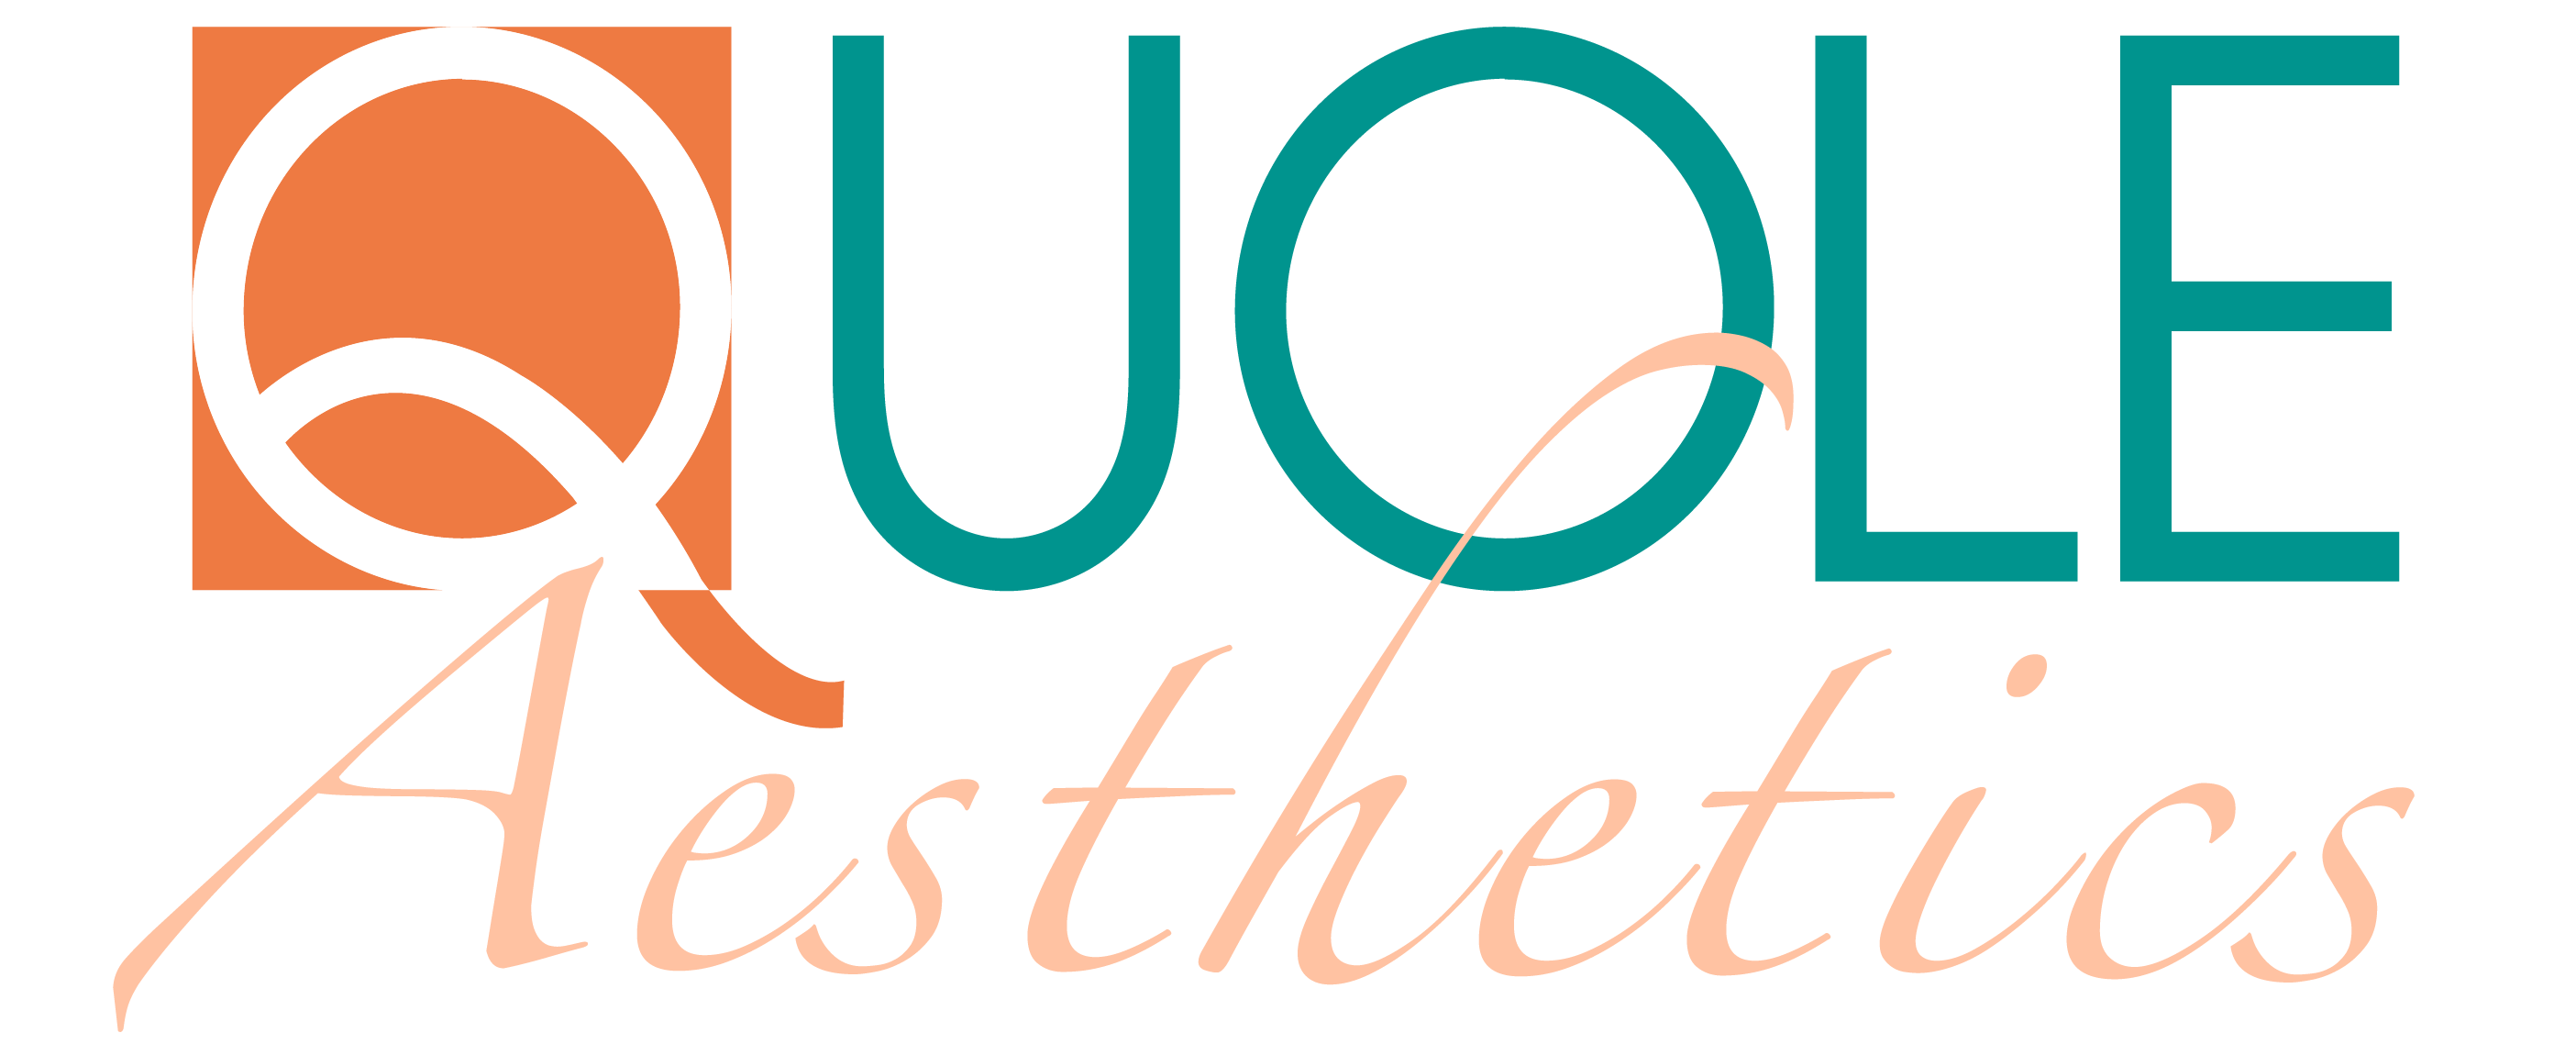 logo 2 aesthetics-01